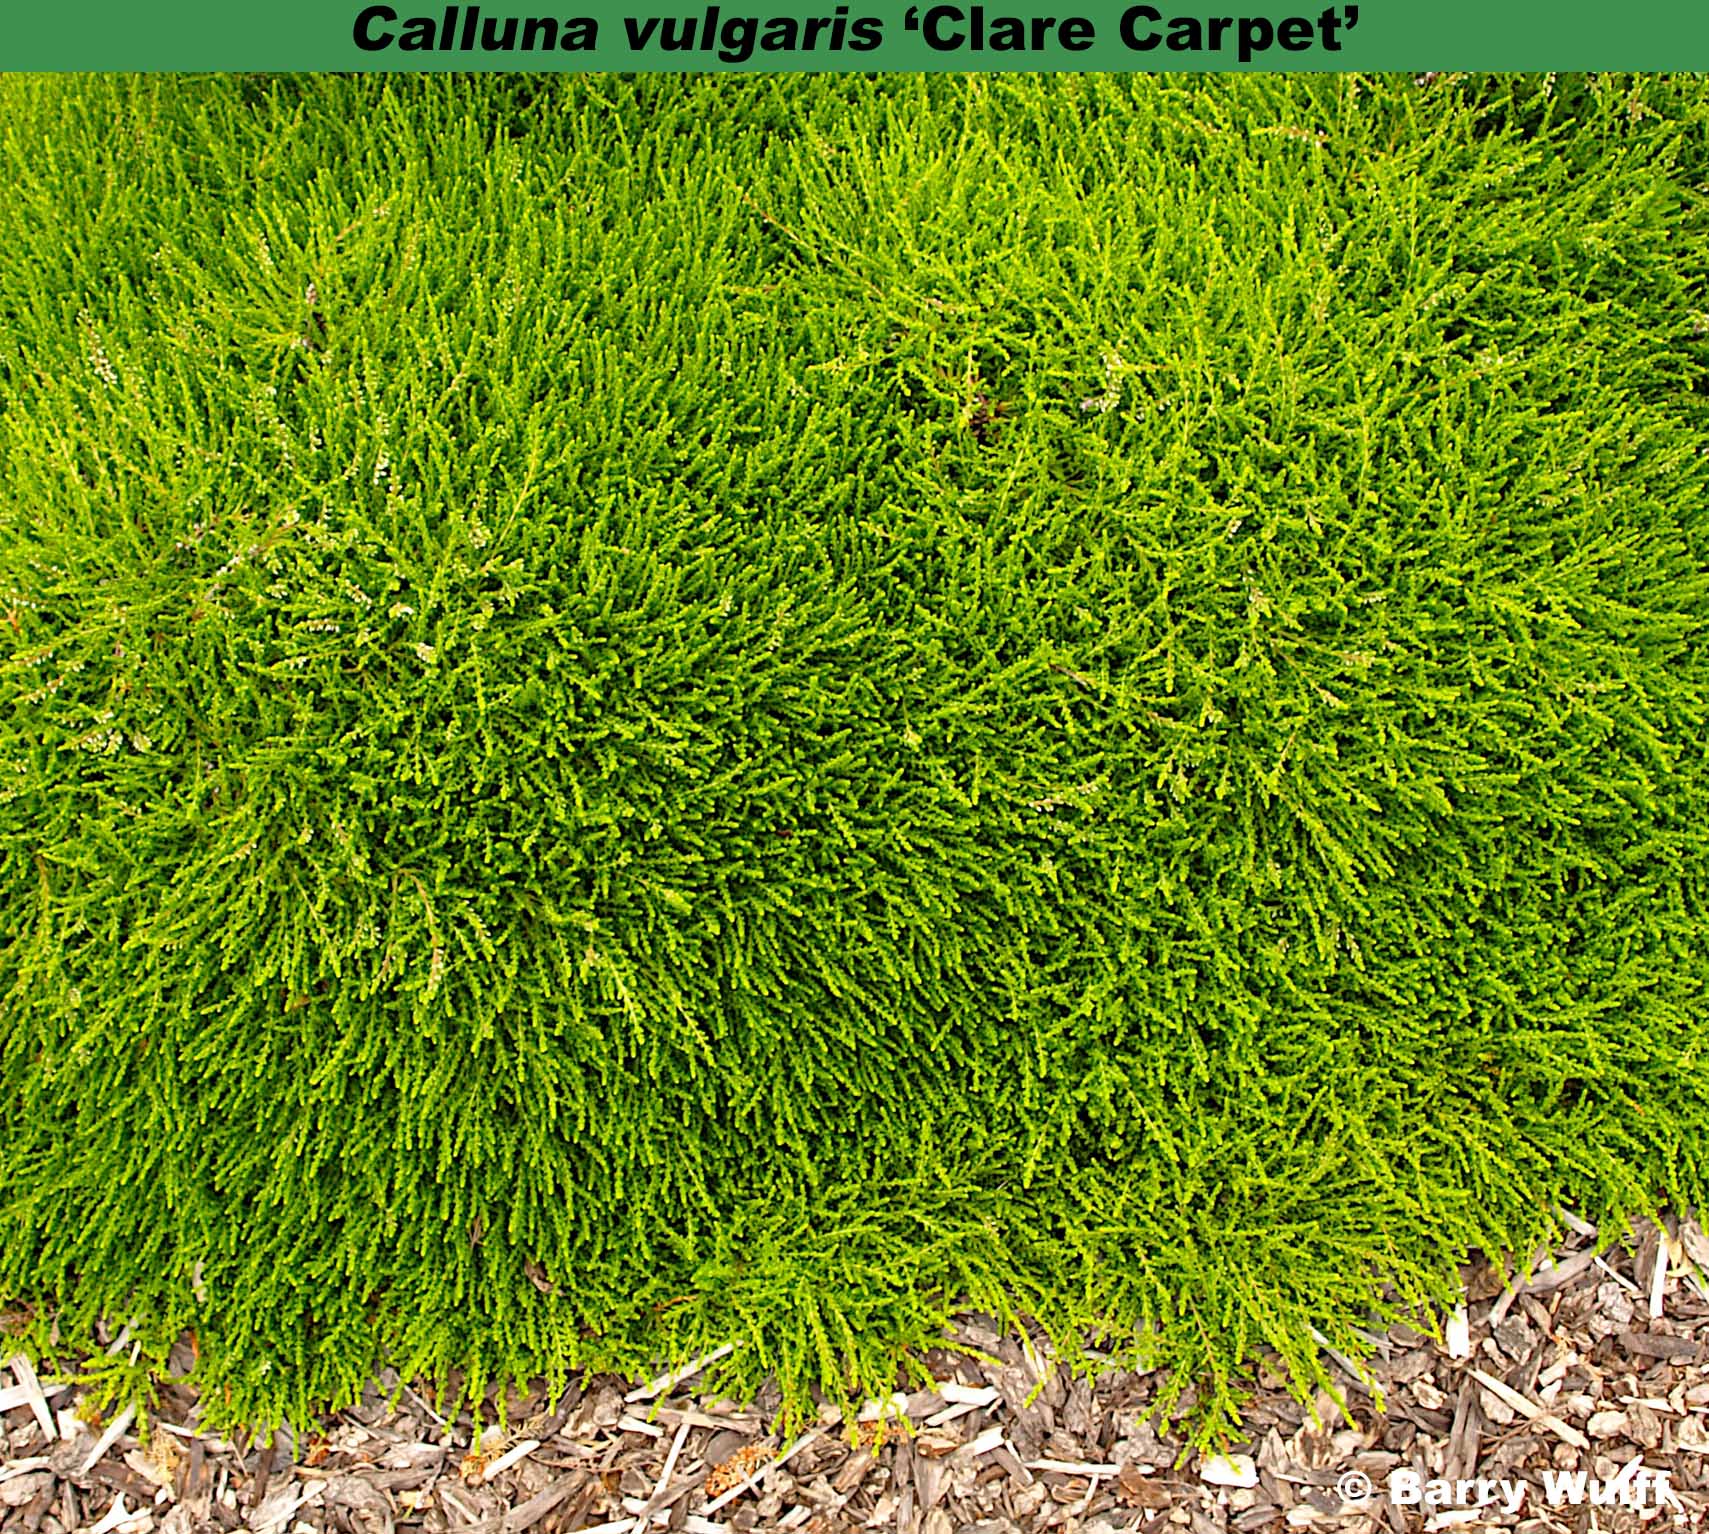 ‘Clare Carpet’